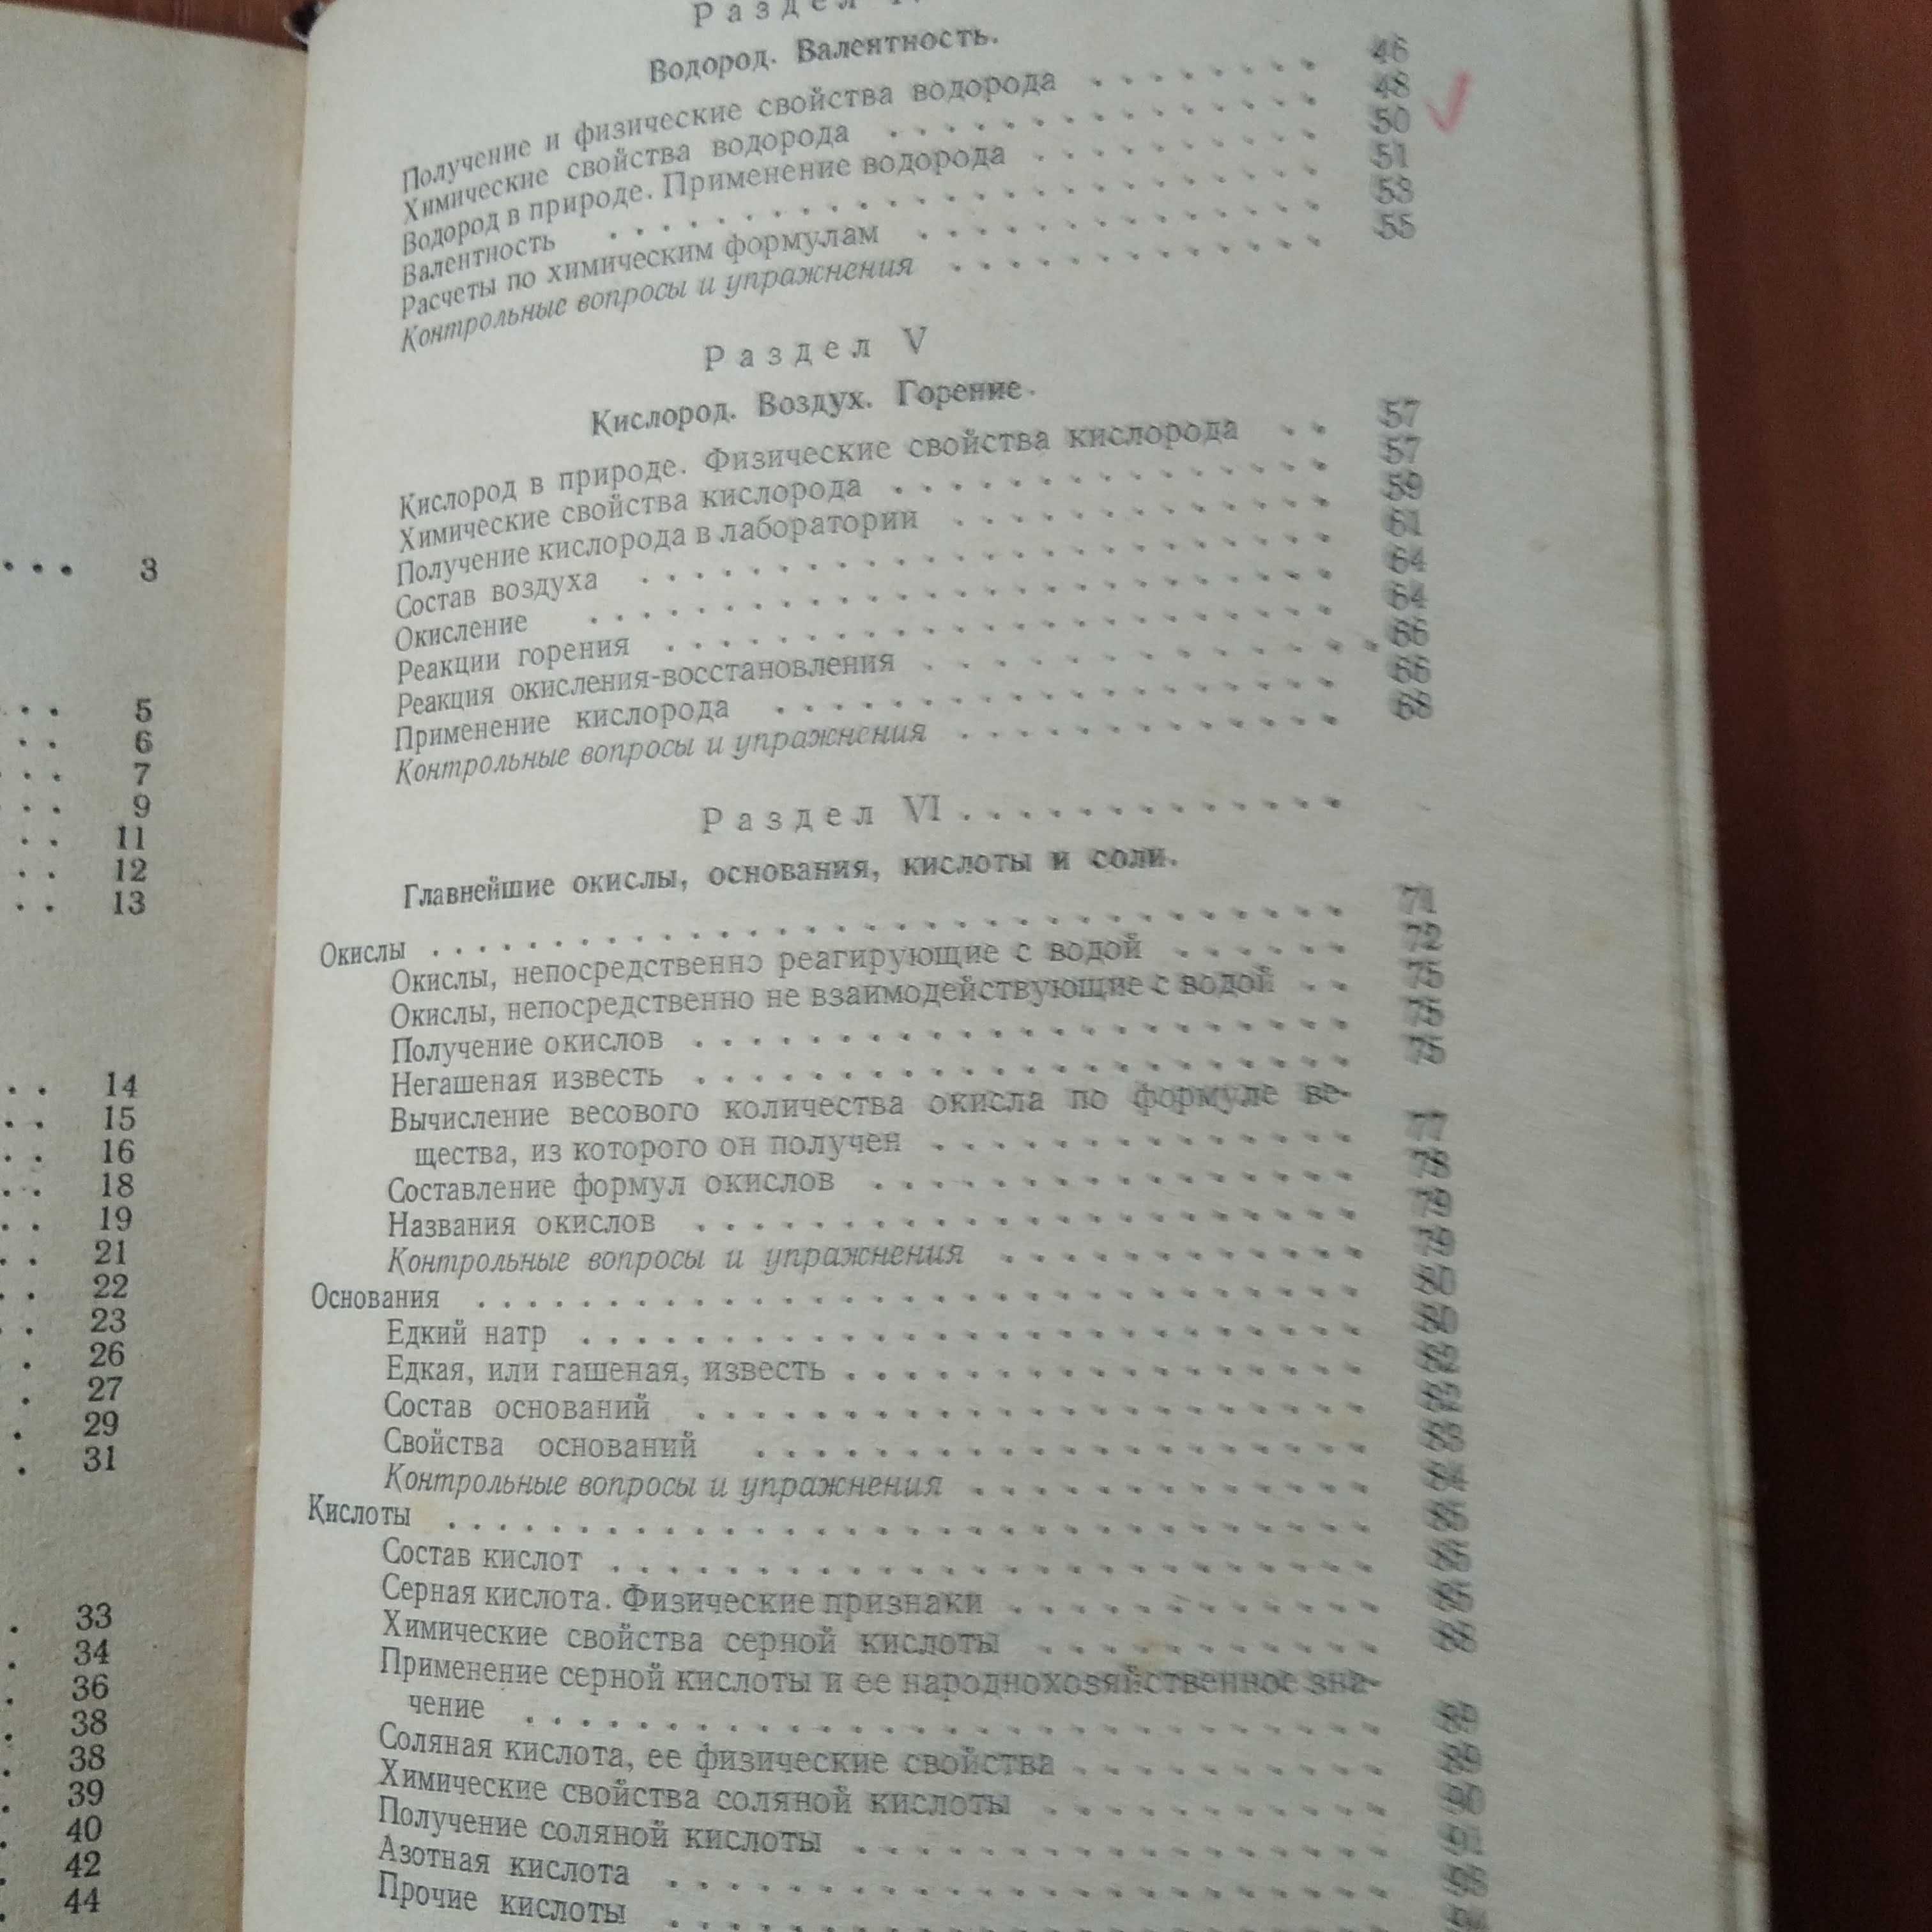 Химия. Учебник для 7-8 классов. 1960 г.